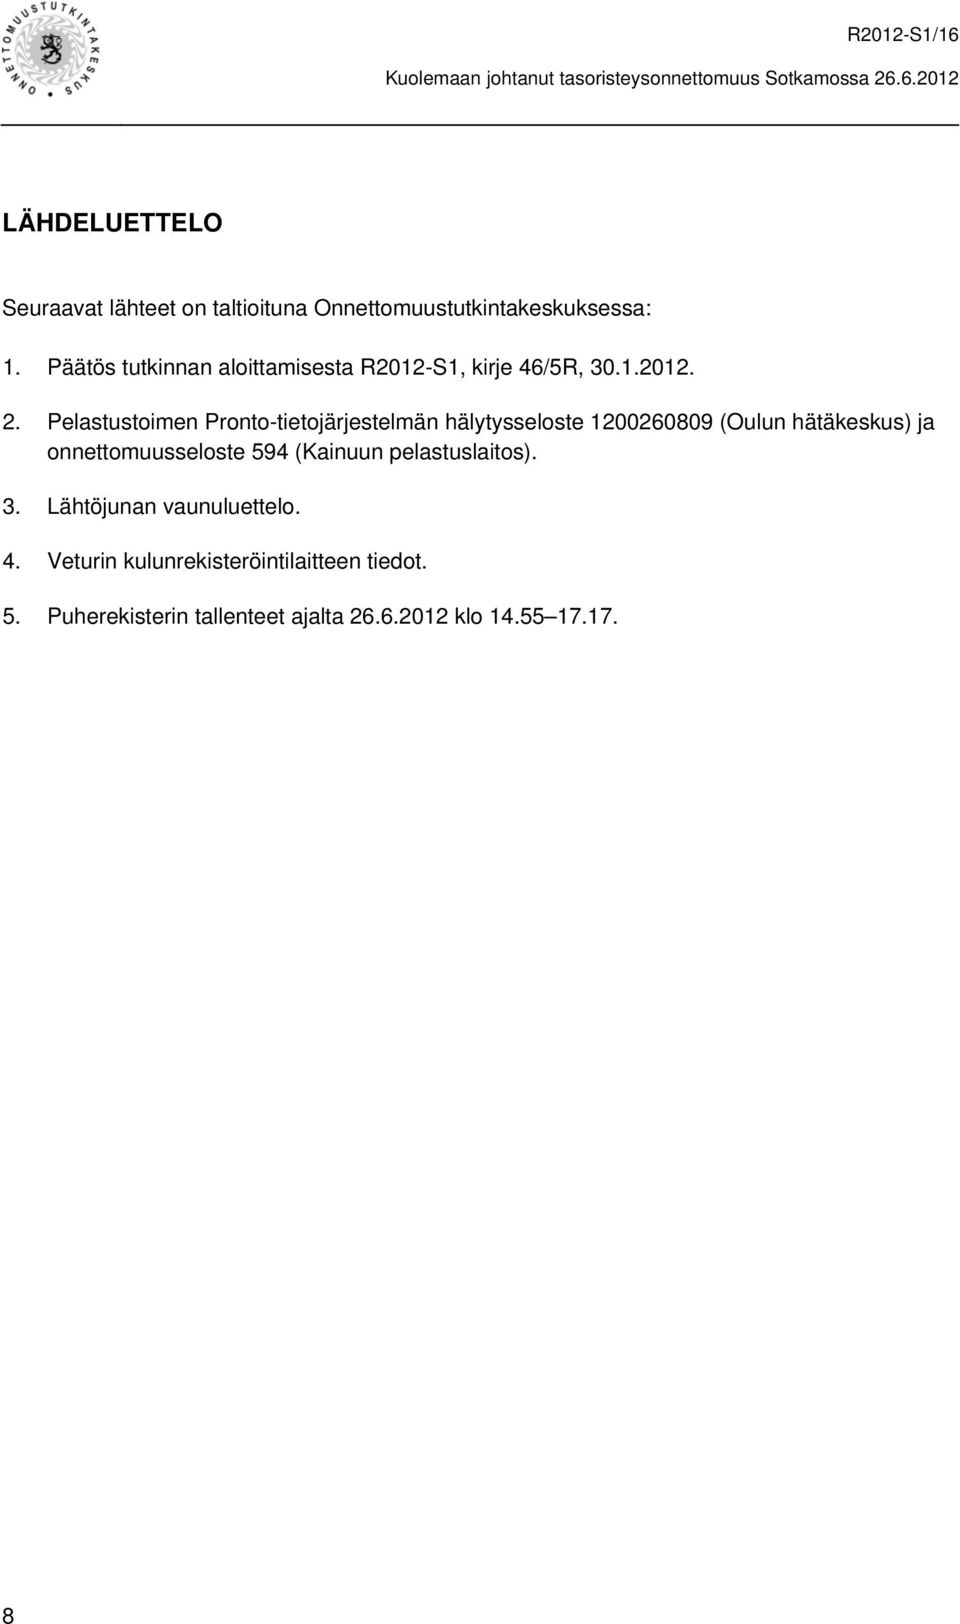 Pelastustoimen Pronto-tietojärjestelmän hälytysseloste 1200260809 (Oulun hätäkeskus) ja onnettomuusseloste